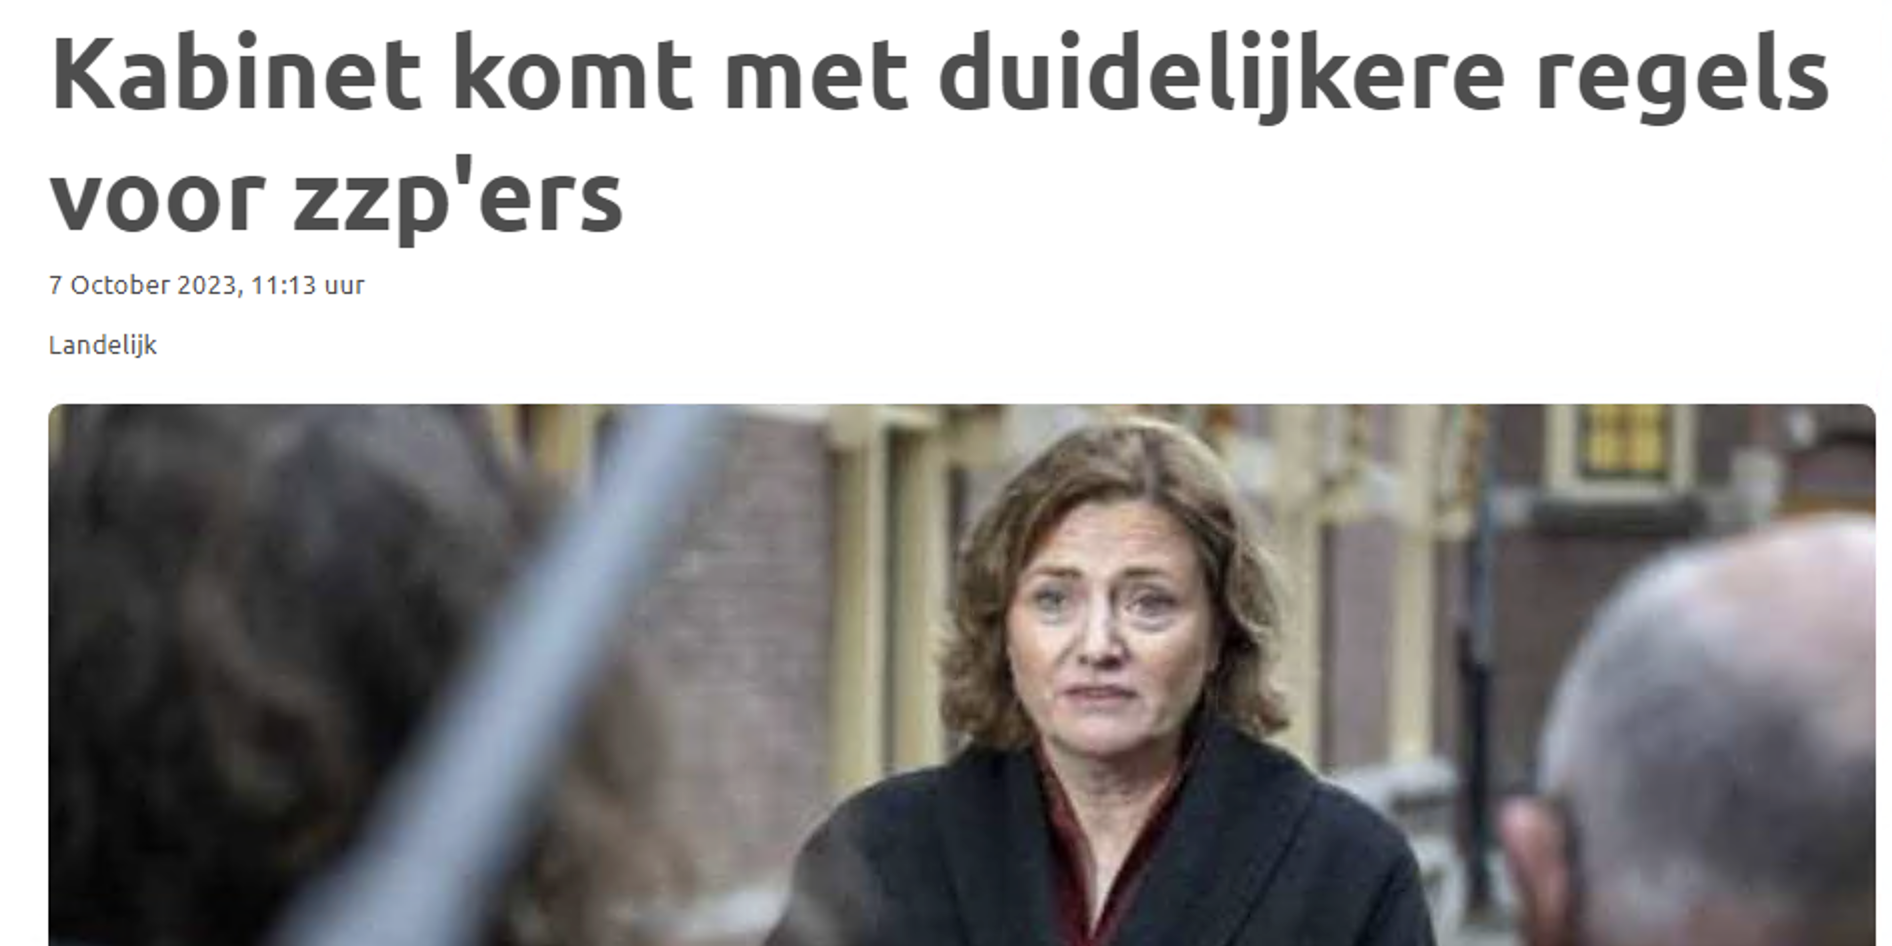 ‘VZN ontevreden over wetsvoorstel aanpak schijnzelfstandigheid’ – VZN in Rijswijks Dagblad